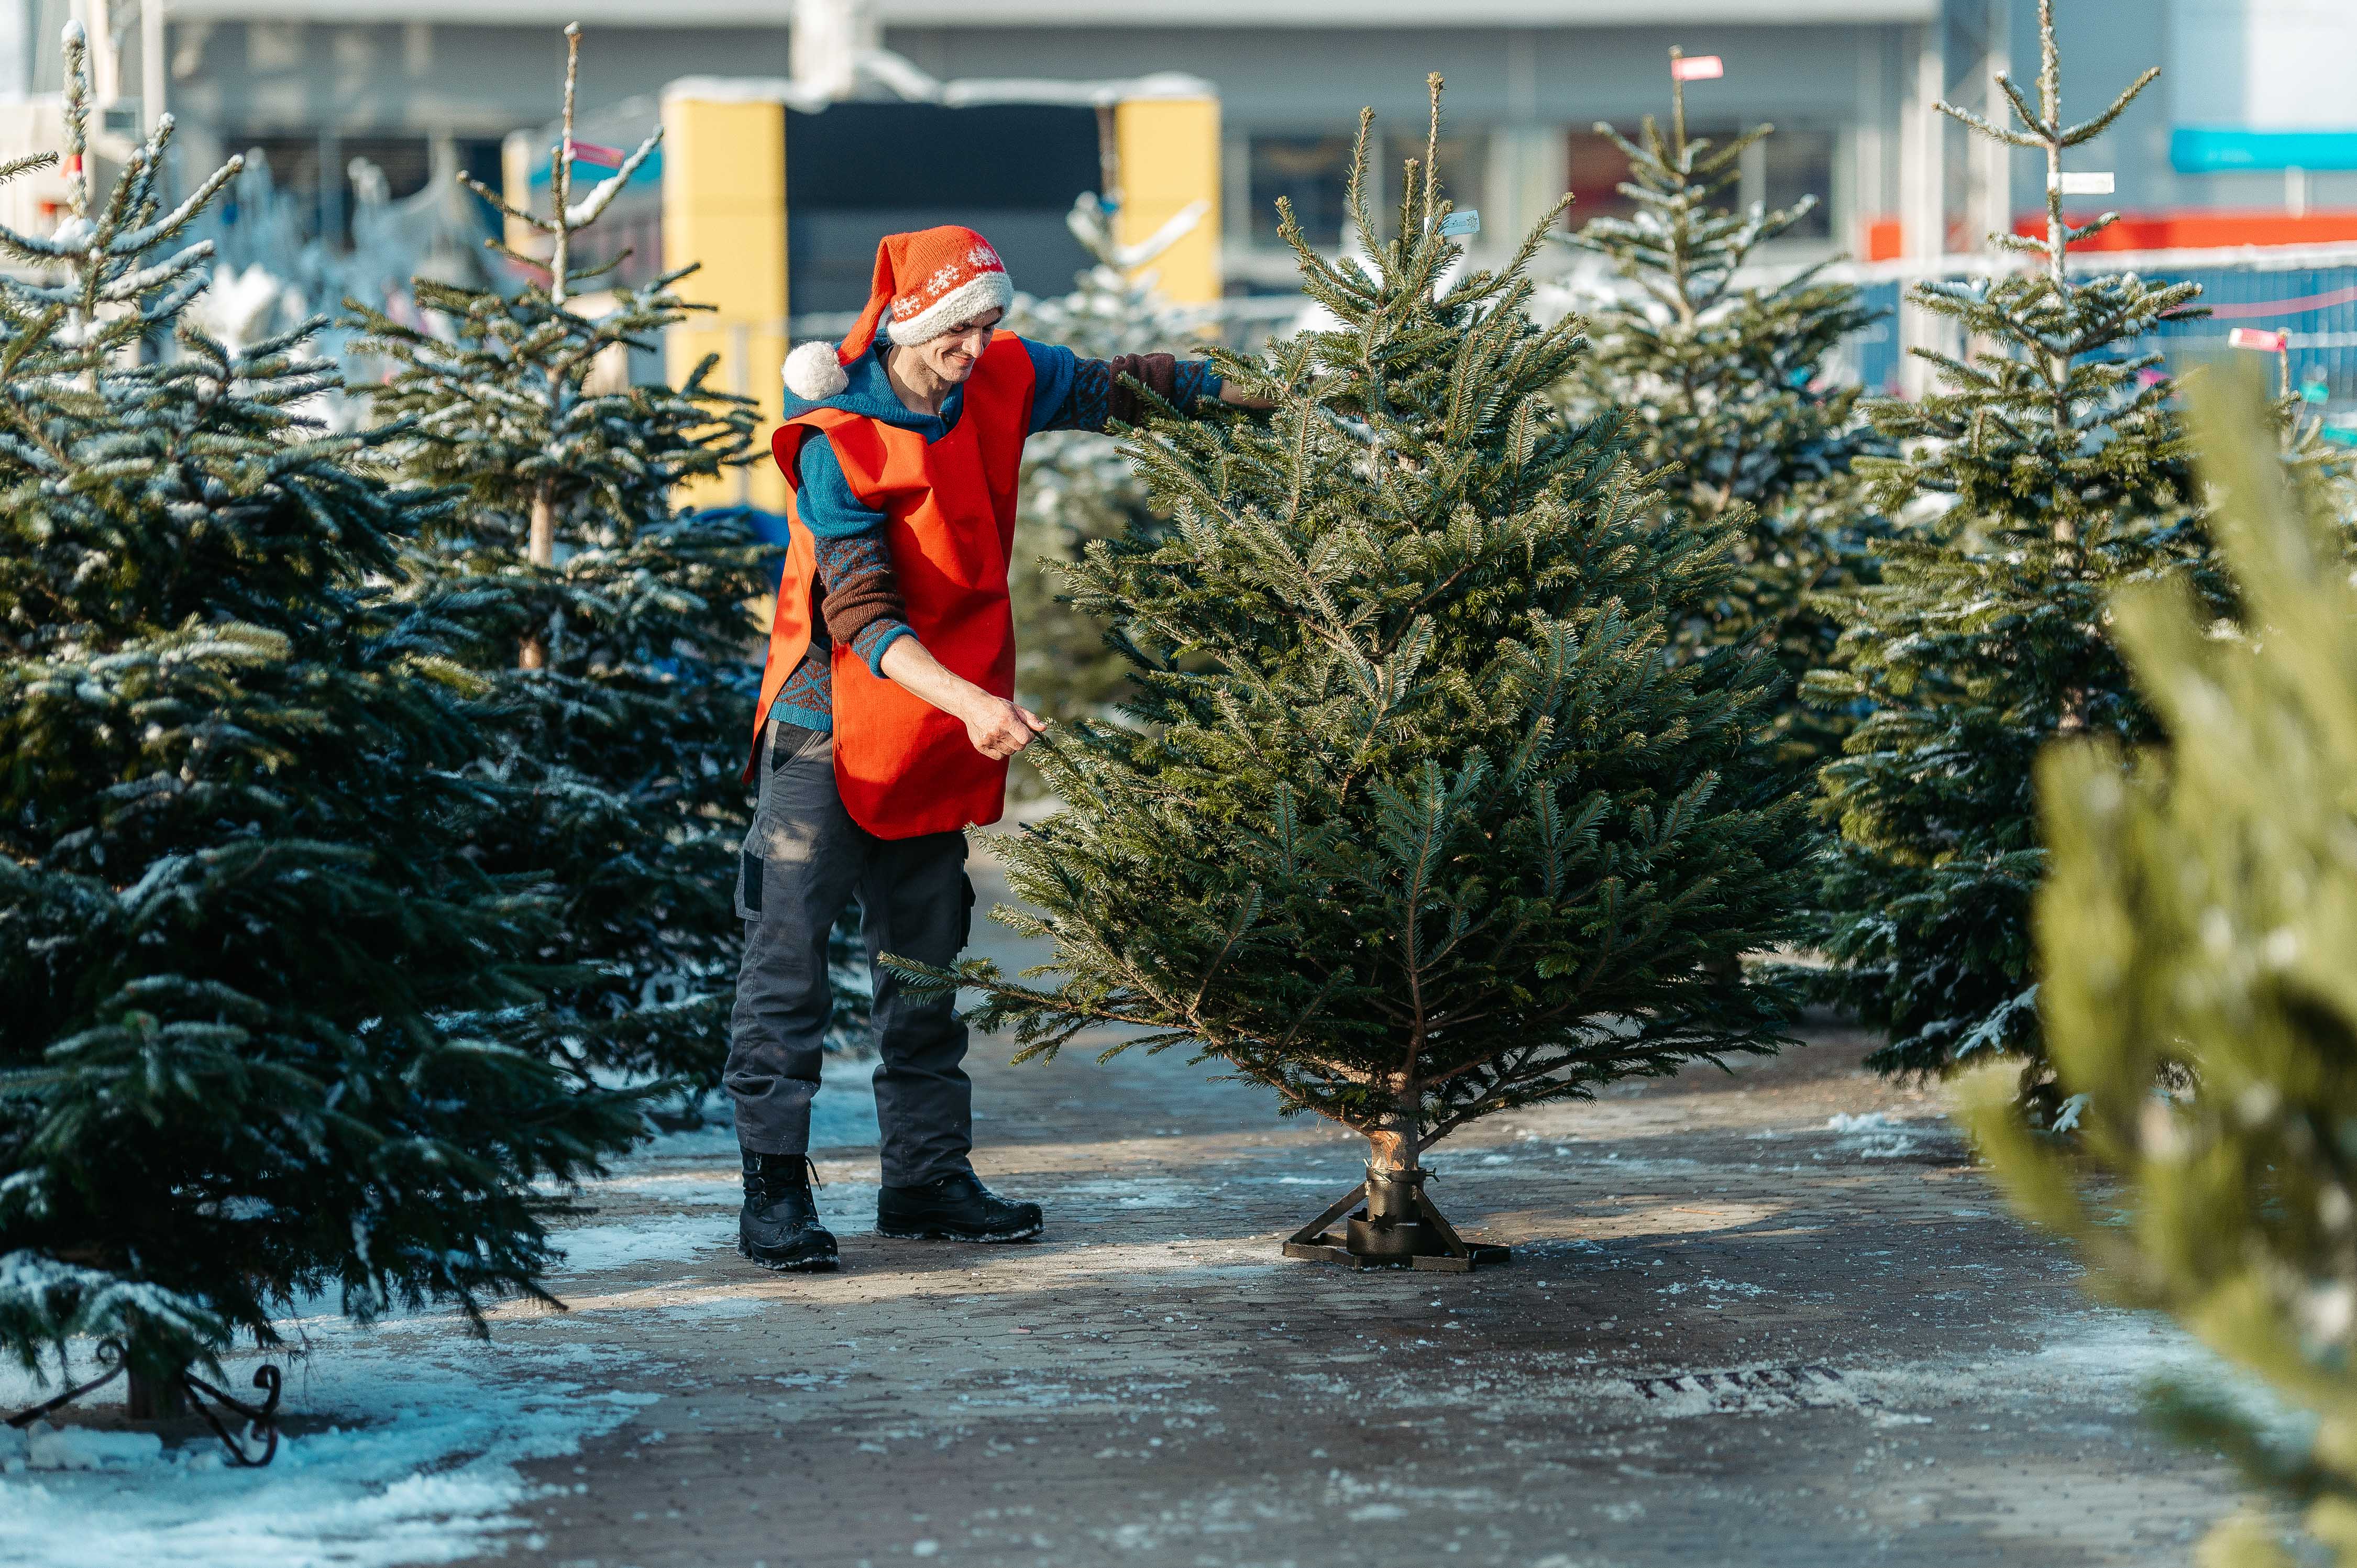 A fenyőfa karácsonykor továbbra is menő portéka, de legtöbbjük továbbra is a kukában végzi